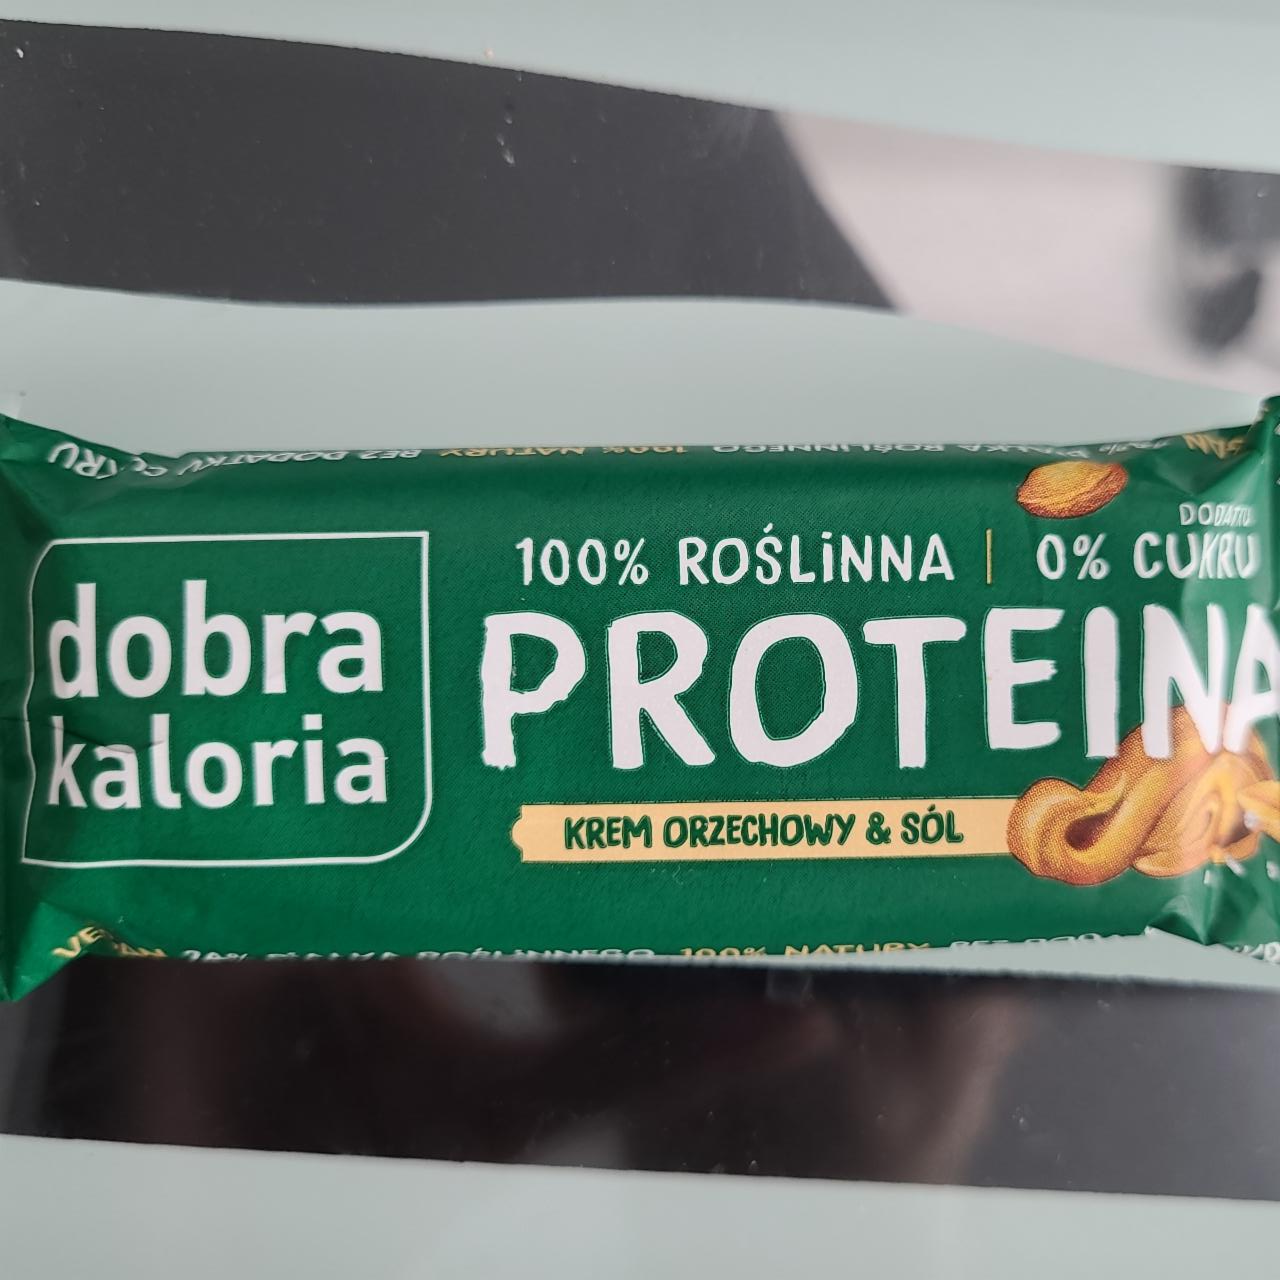 Fotografie - Proteina krem orzechowy & sól Dobra Kaloria